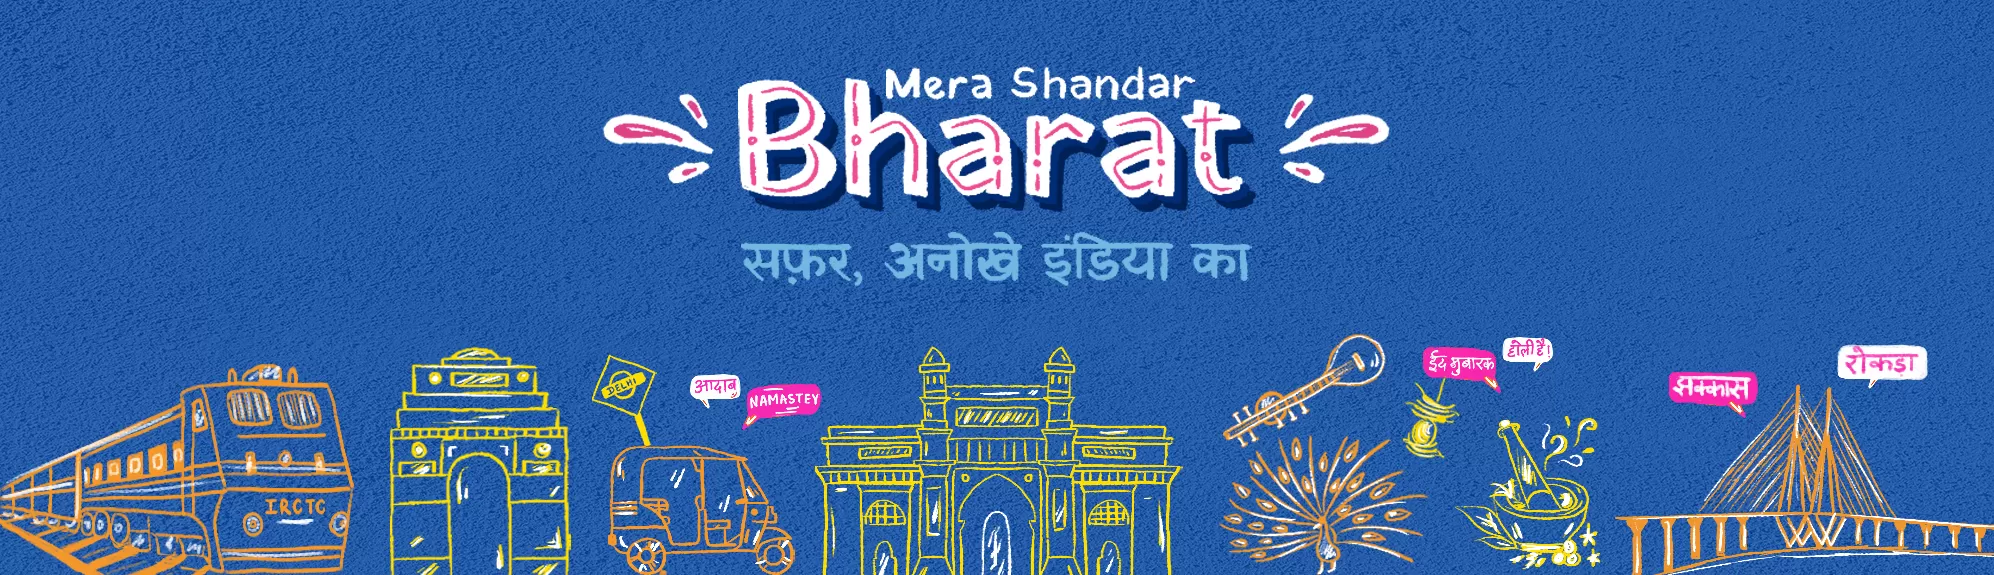 Cover of Mera Shandar Bharat